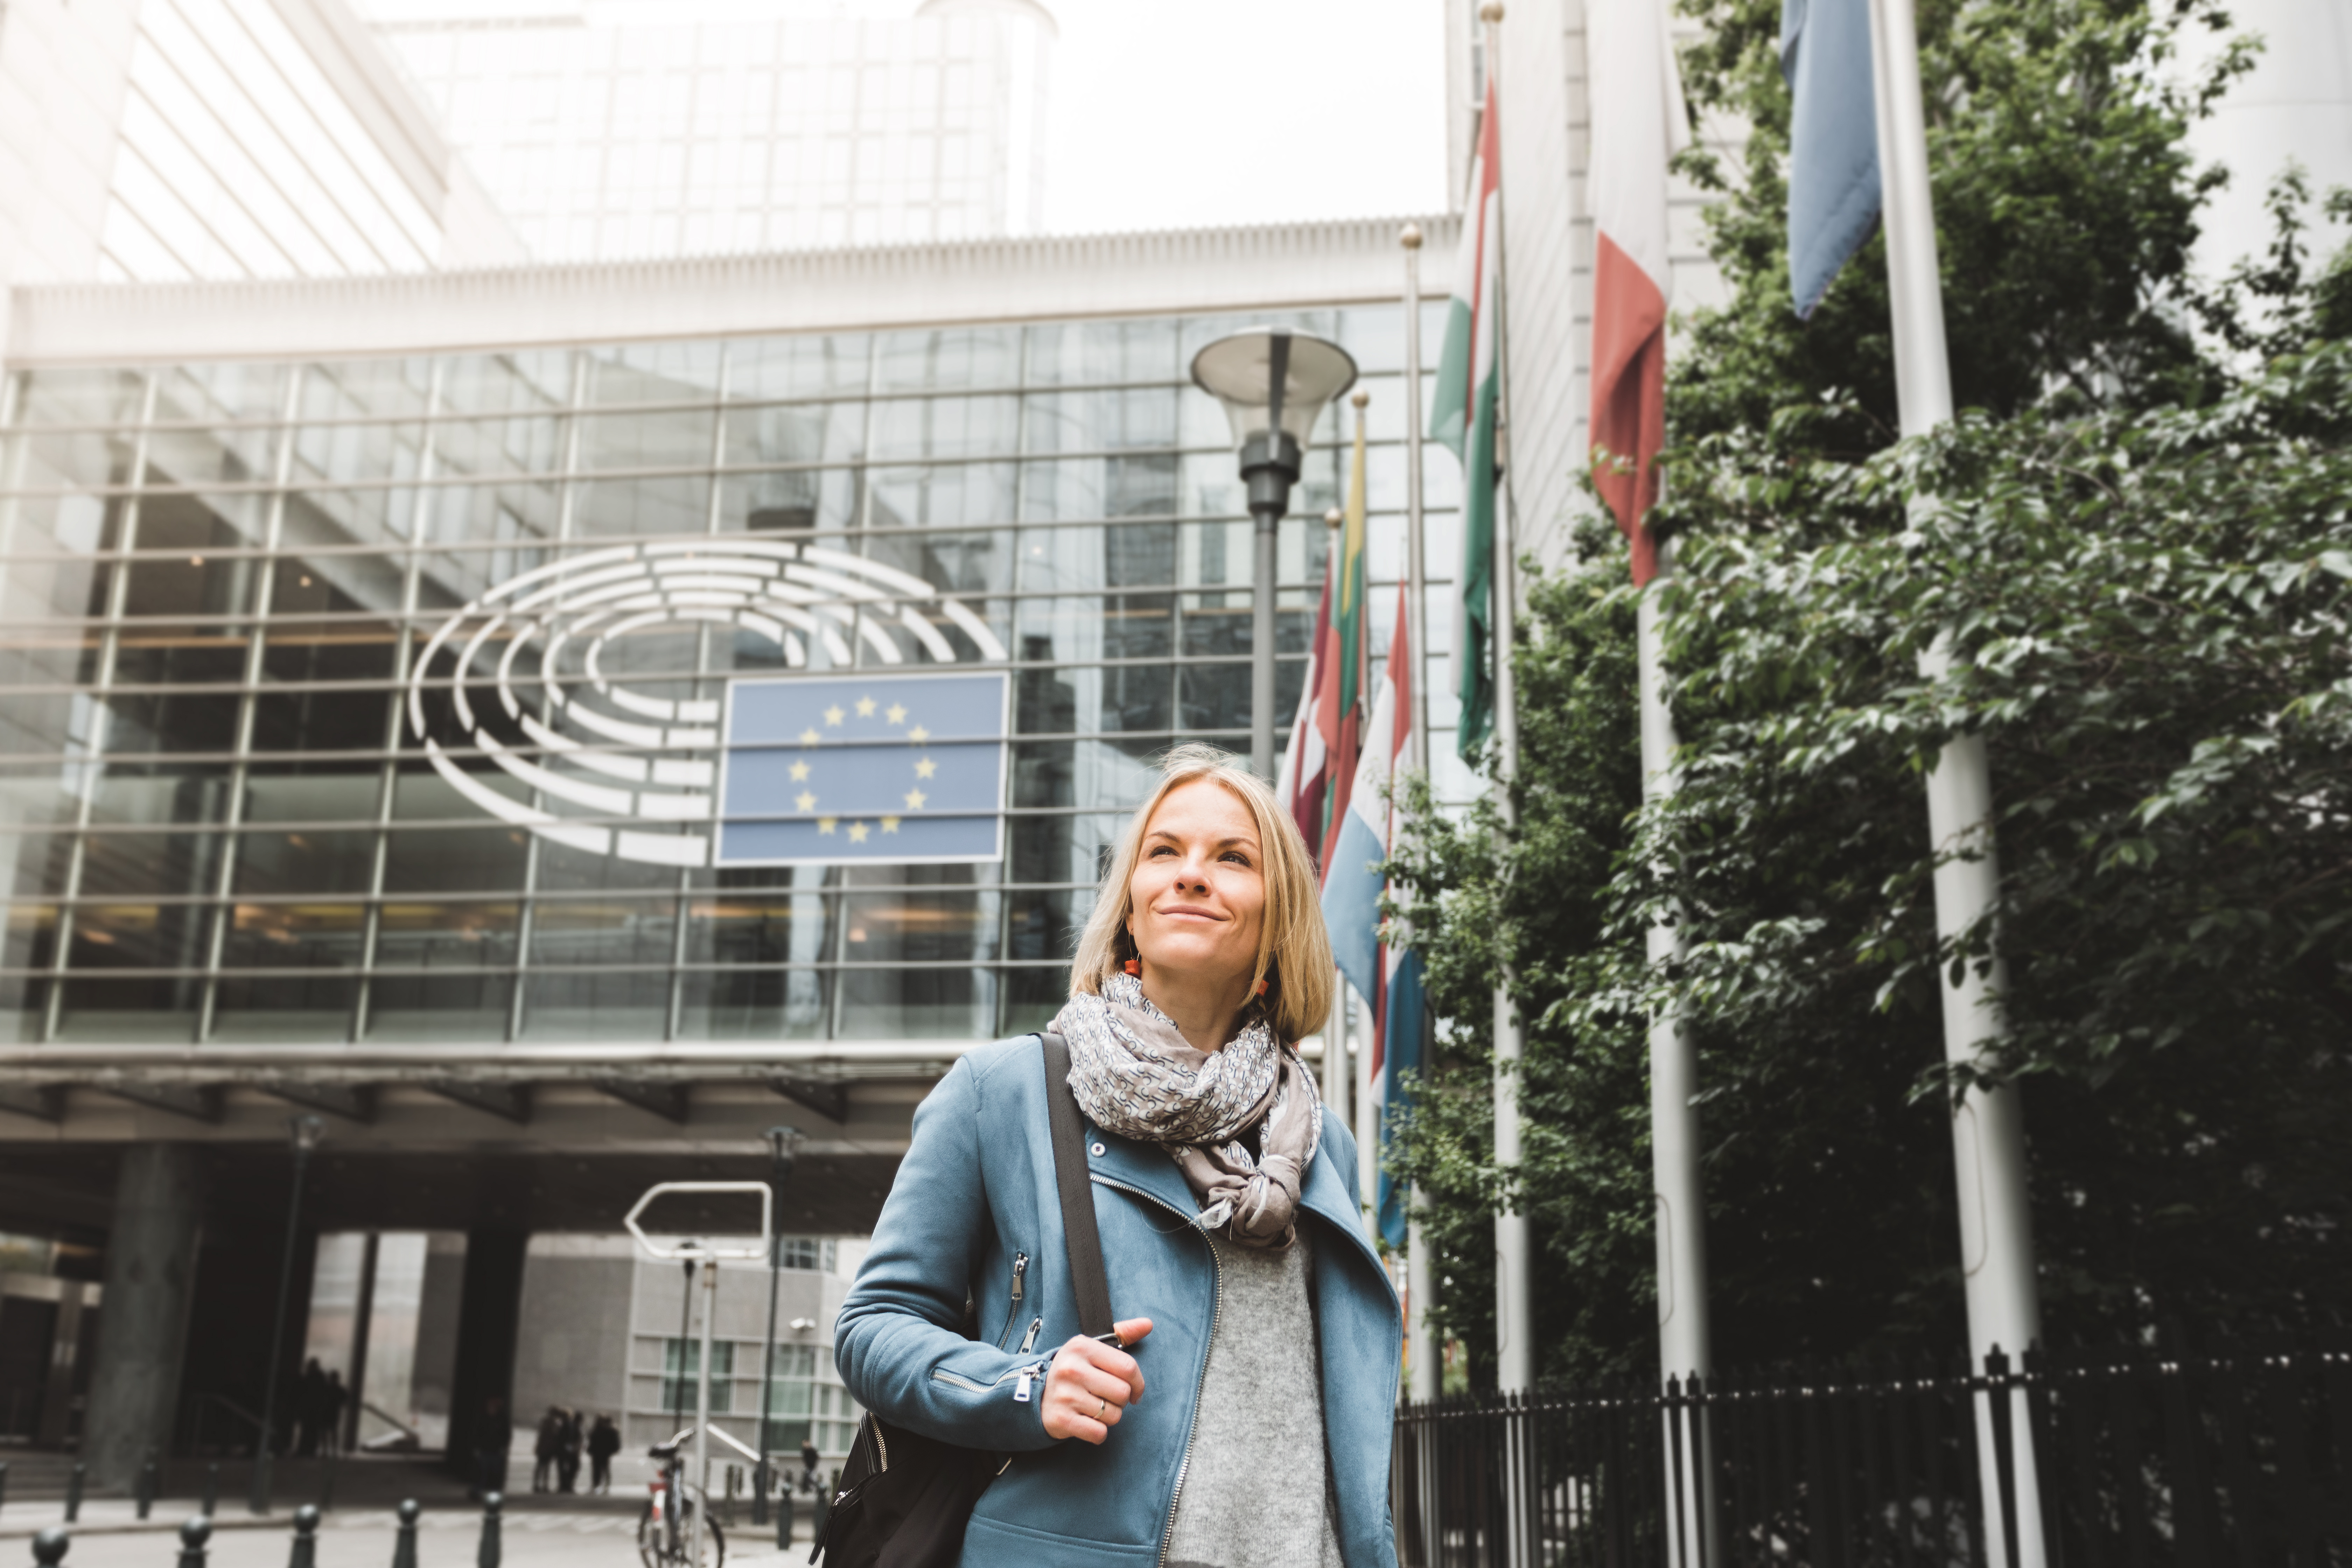 Kobieta stojąca przed budynkiem, na budynku znajduje się flaga Unii Europejskiej